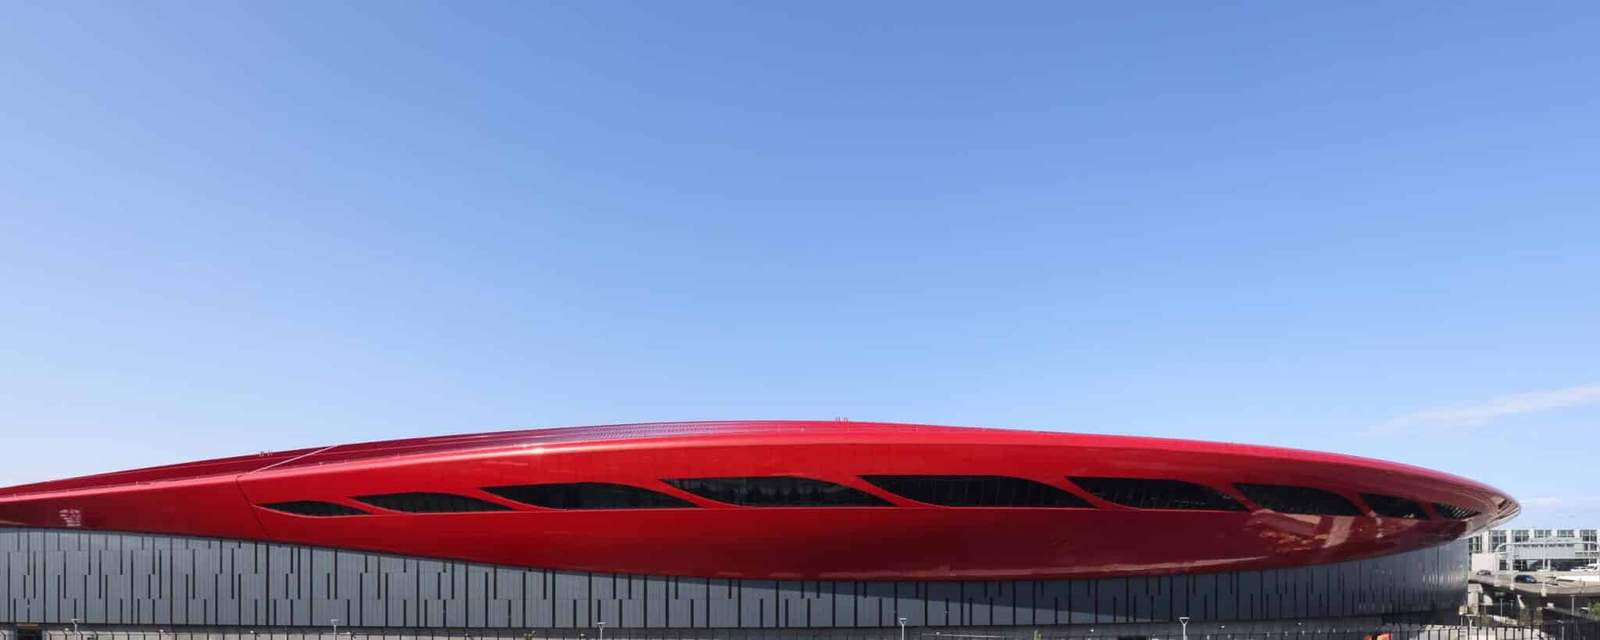 يتصدر لويس فيدال + المهندسين المعماريين مبنى الركاب E في مطار لوغان بحجم أحمر منشوري